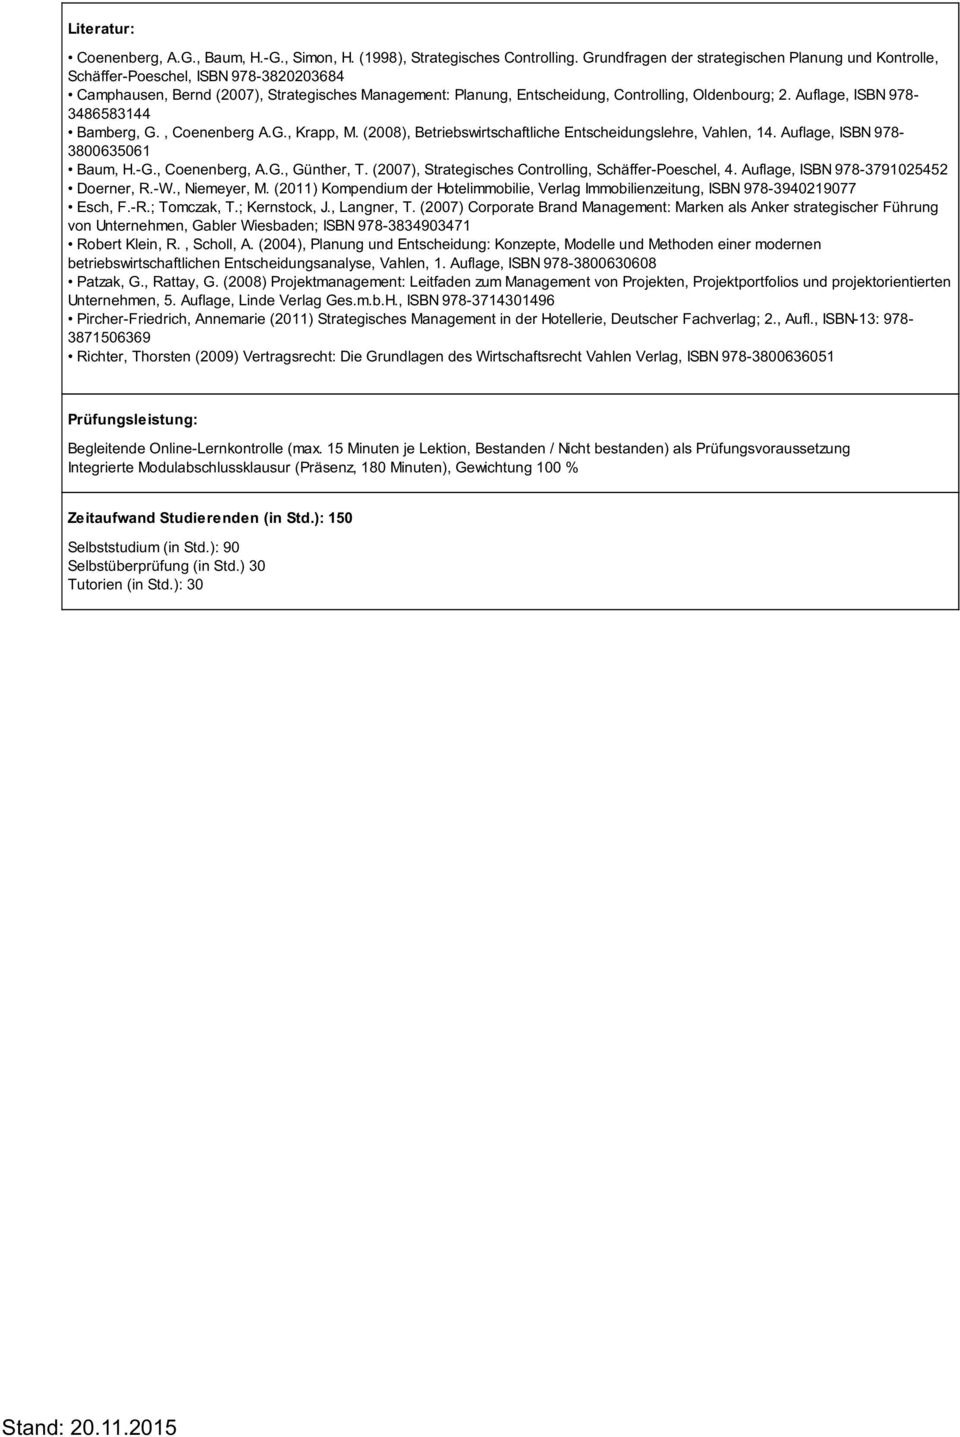 Auflage, ISBN 978-3486583144 Bamberg, G., Coenenberg A.G., Krapp, M. (2008), Betriebswirtschaftliche Entscheidungslehre, Vahlen, 14. Auflage, ISBN 978-3800635061 Baum, H.-G., Coenenberg, A.G., Günther, T.